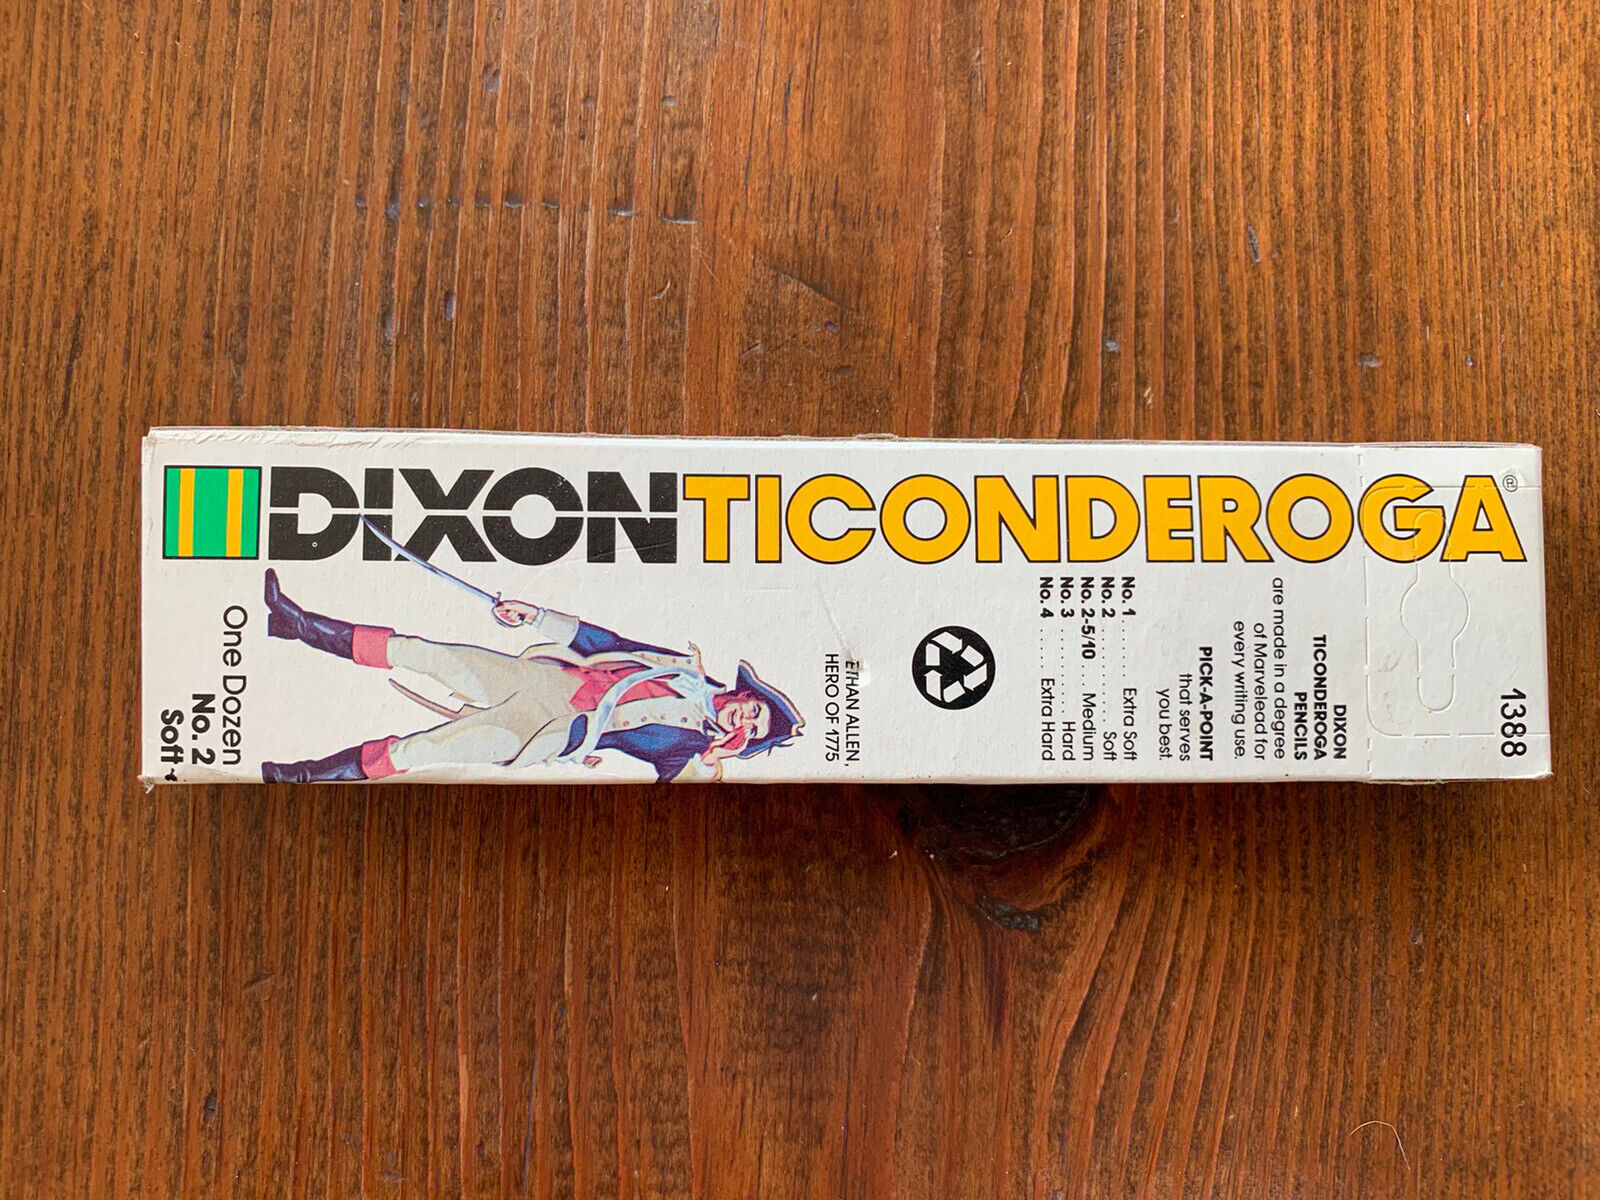 Vintage Dixon Ticonderoga 1388 No. 2 Pencils. Unused in Box of 12